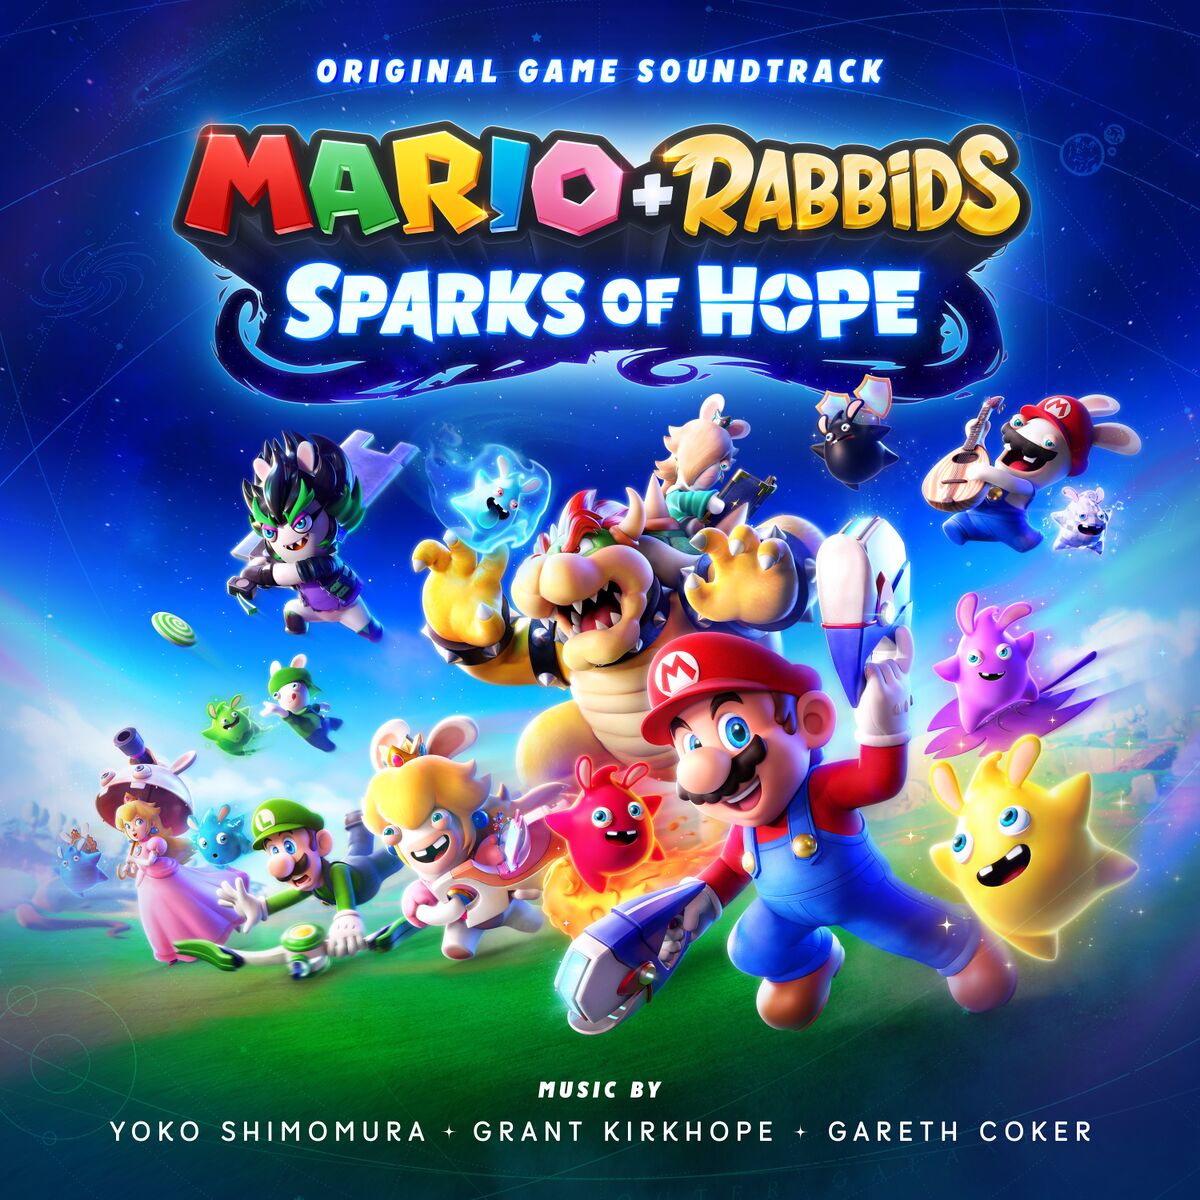 Super Mario Odyssey Original Soundtrack - Super Mario Wiki, the